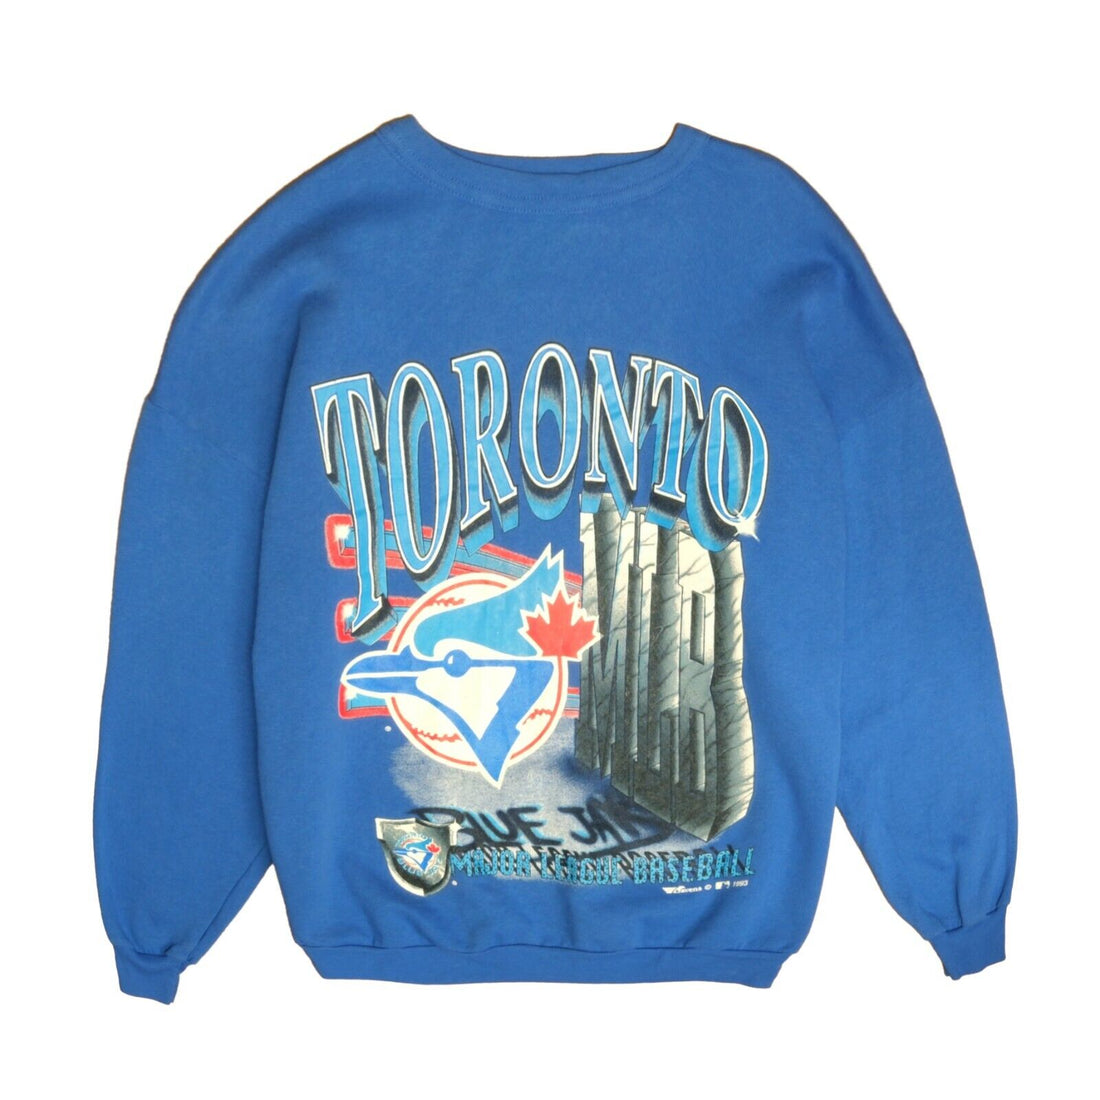 Vintage Toronto Blue Jays Sweatshirt Crewneck Size Medium 1993 90s MLB